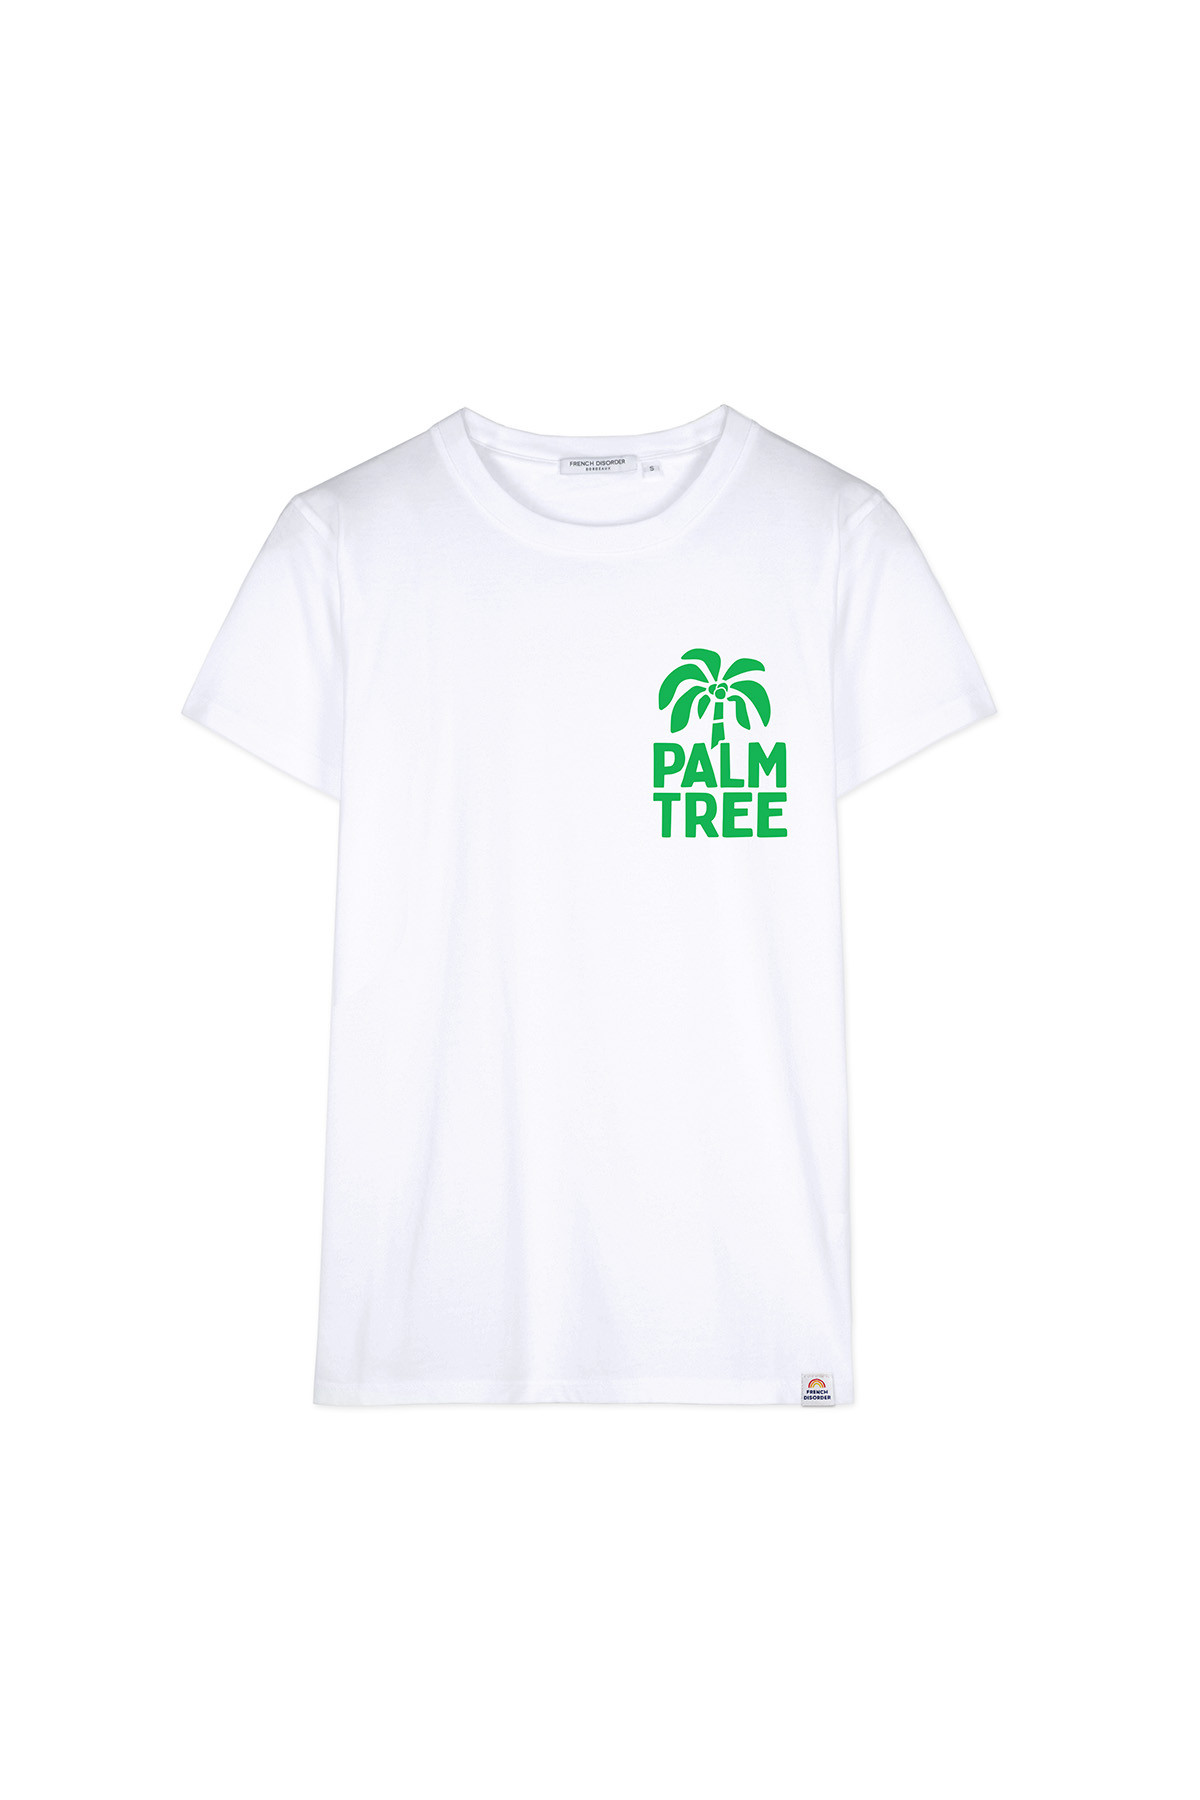 Tshirt PALM TREE